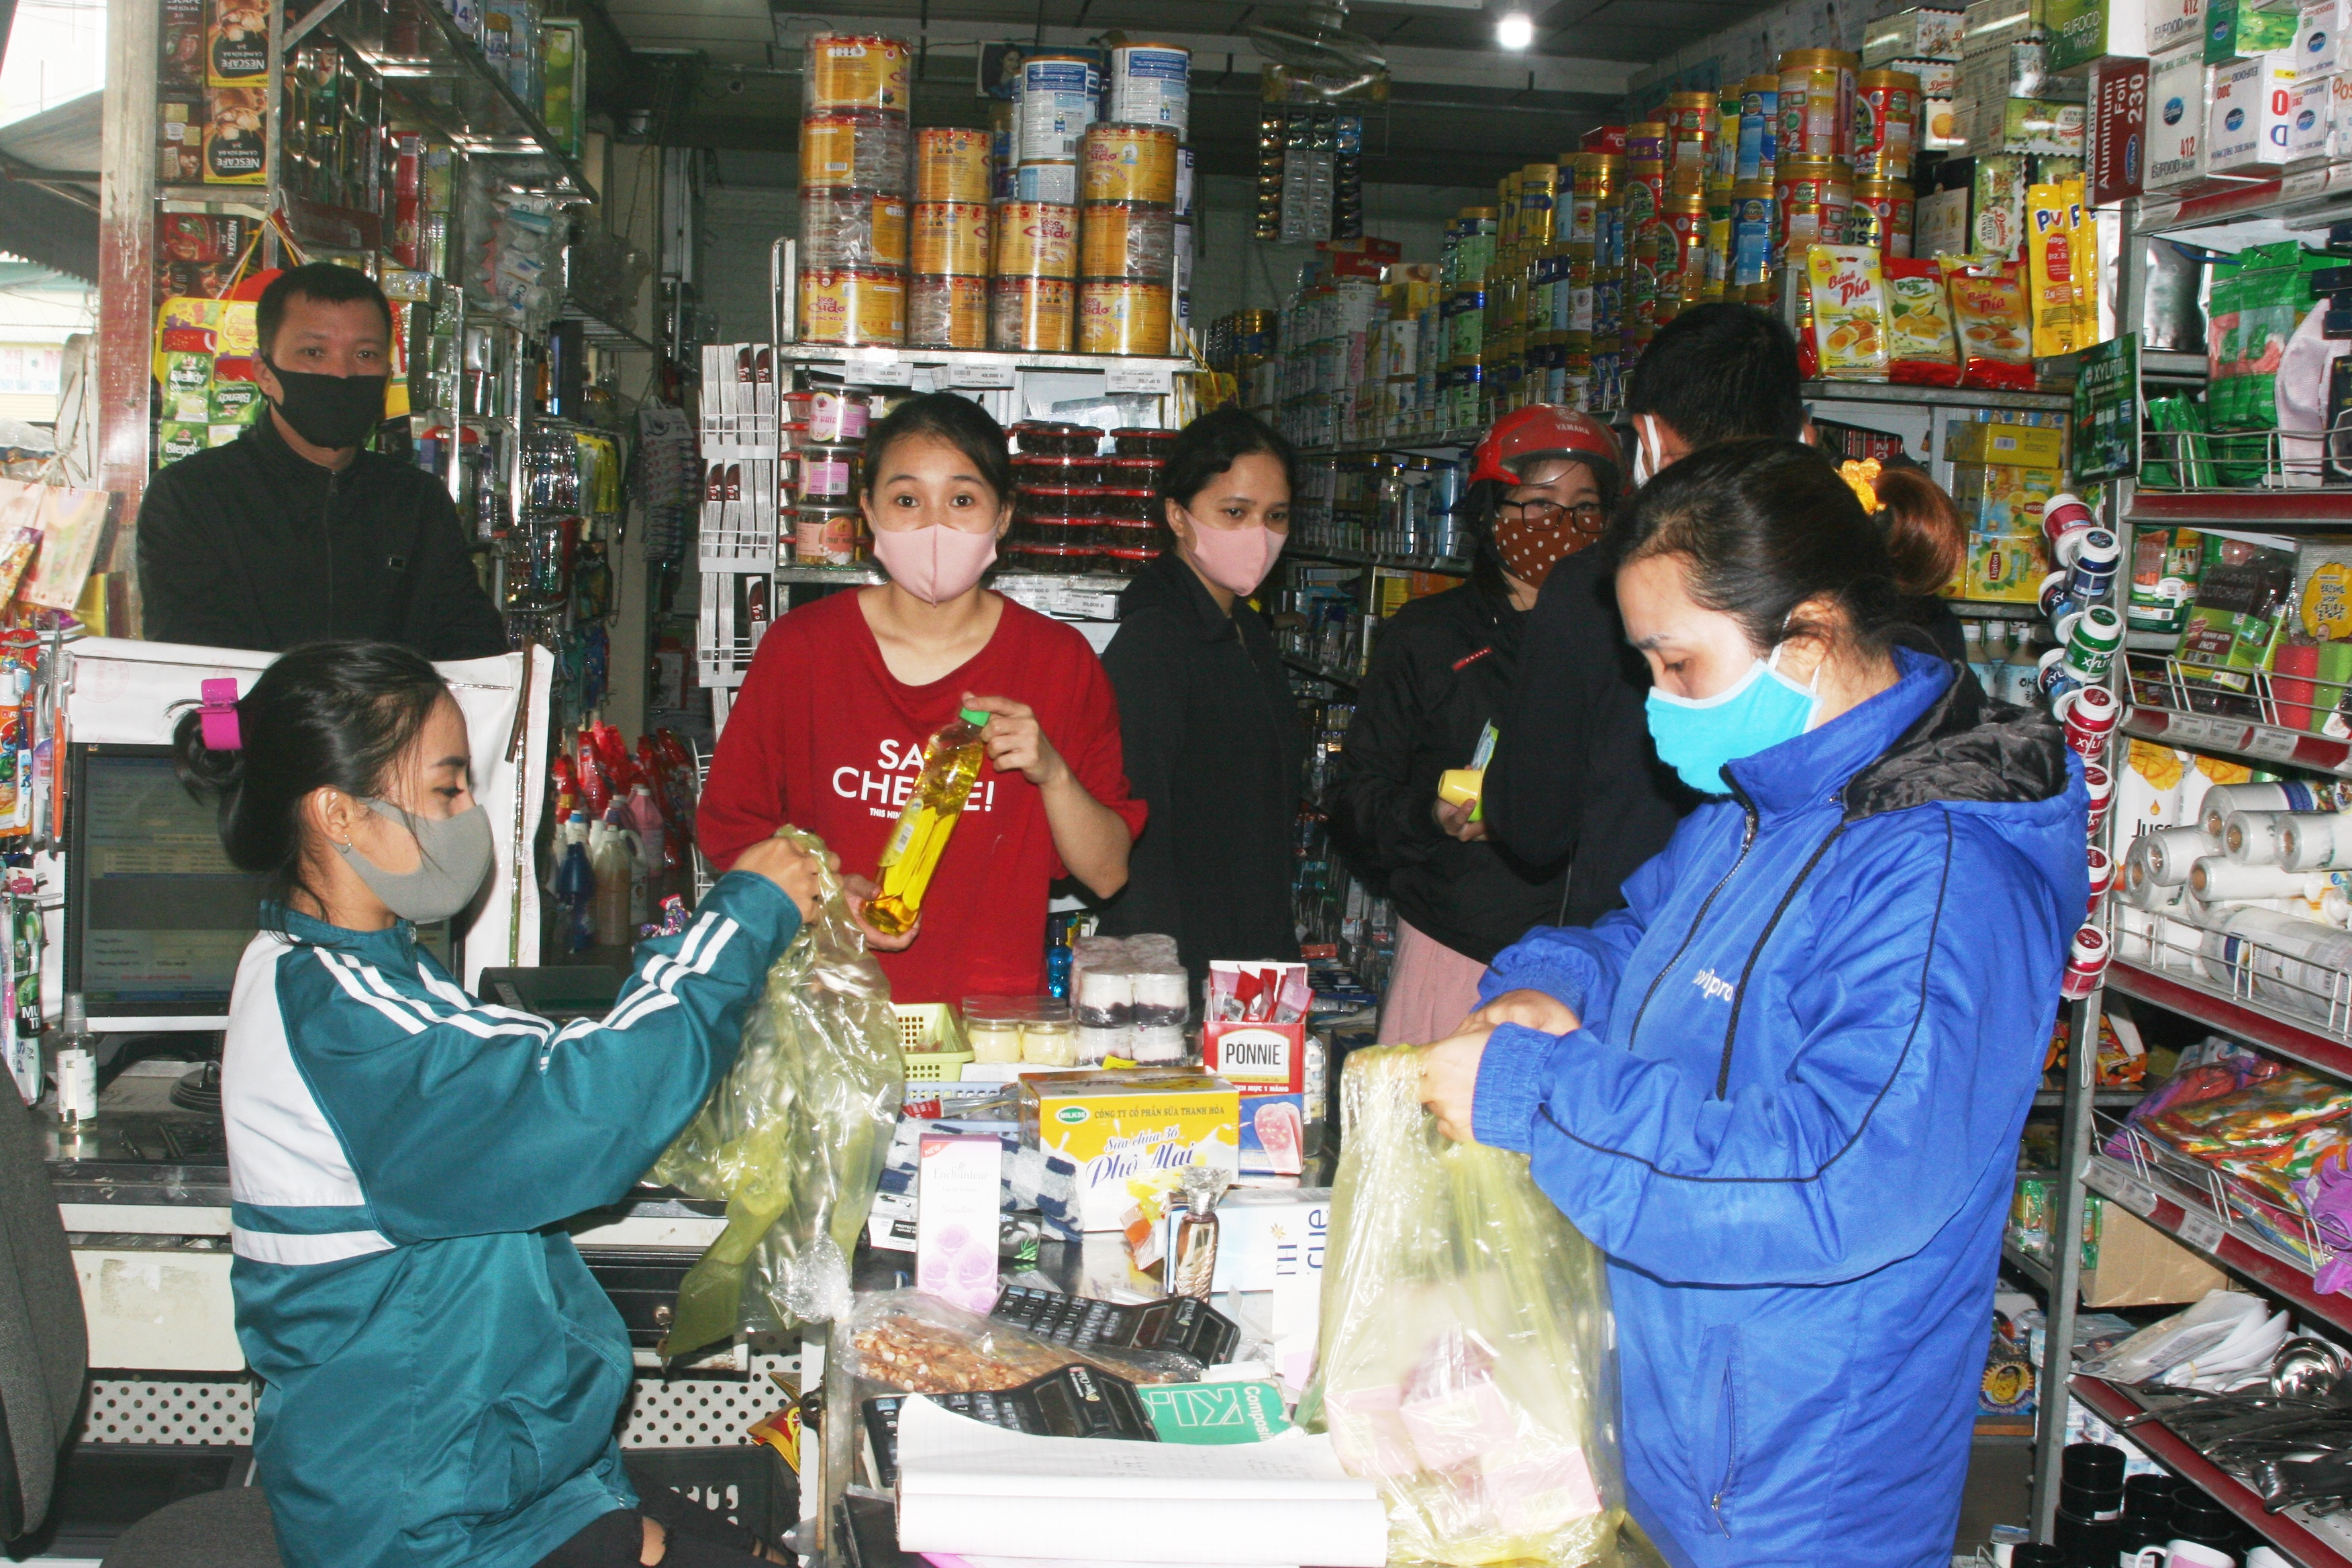 Mặc dù lượng khách mua sắm ít nhưng các quầy hàng ở chợ Giát vẫn mở cửa, chủ quầy và khách hàng đeo khẩu trang khi mua bán. Ảnh: Việt Hùng